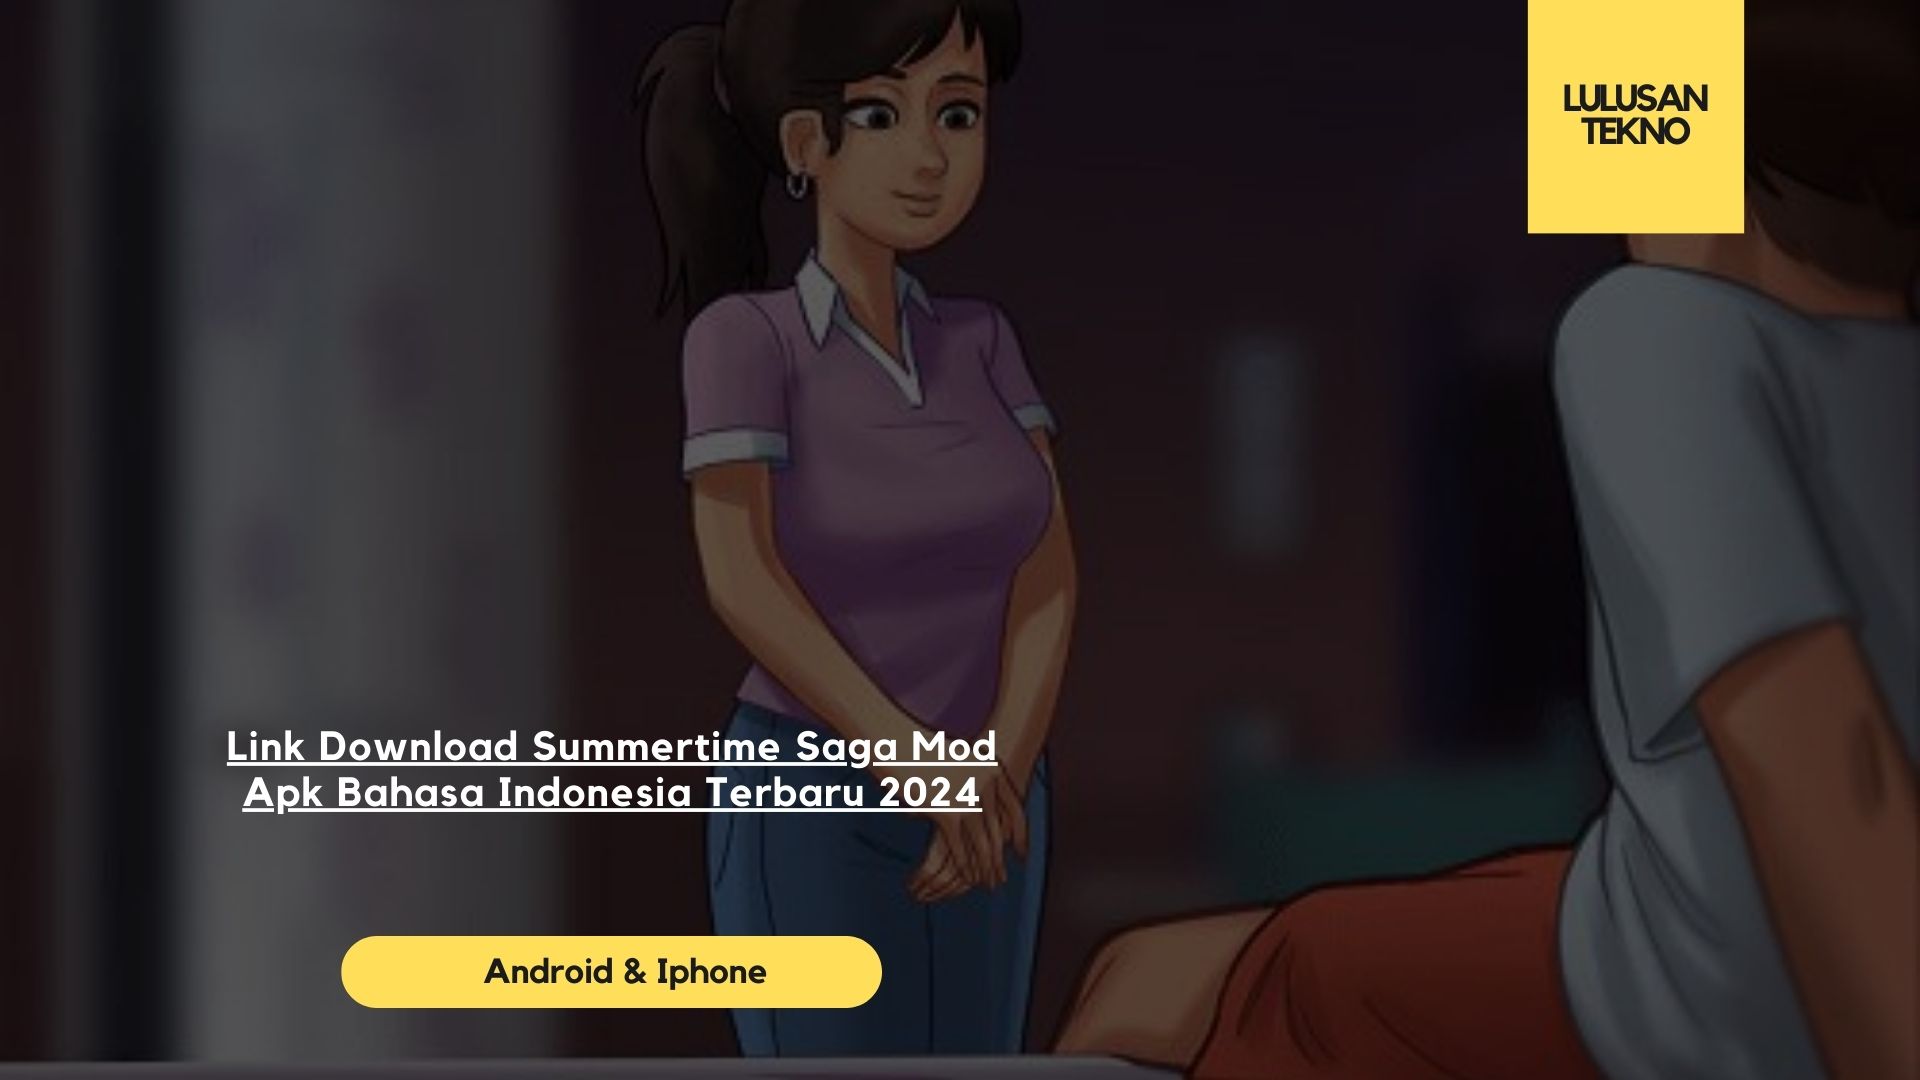 Link Download Summertime Saga Mod Apk Bahasa Indonesia Terbaru 2024